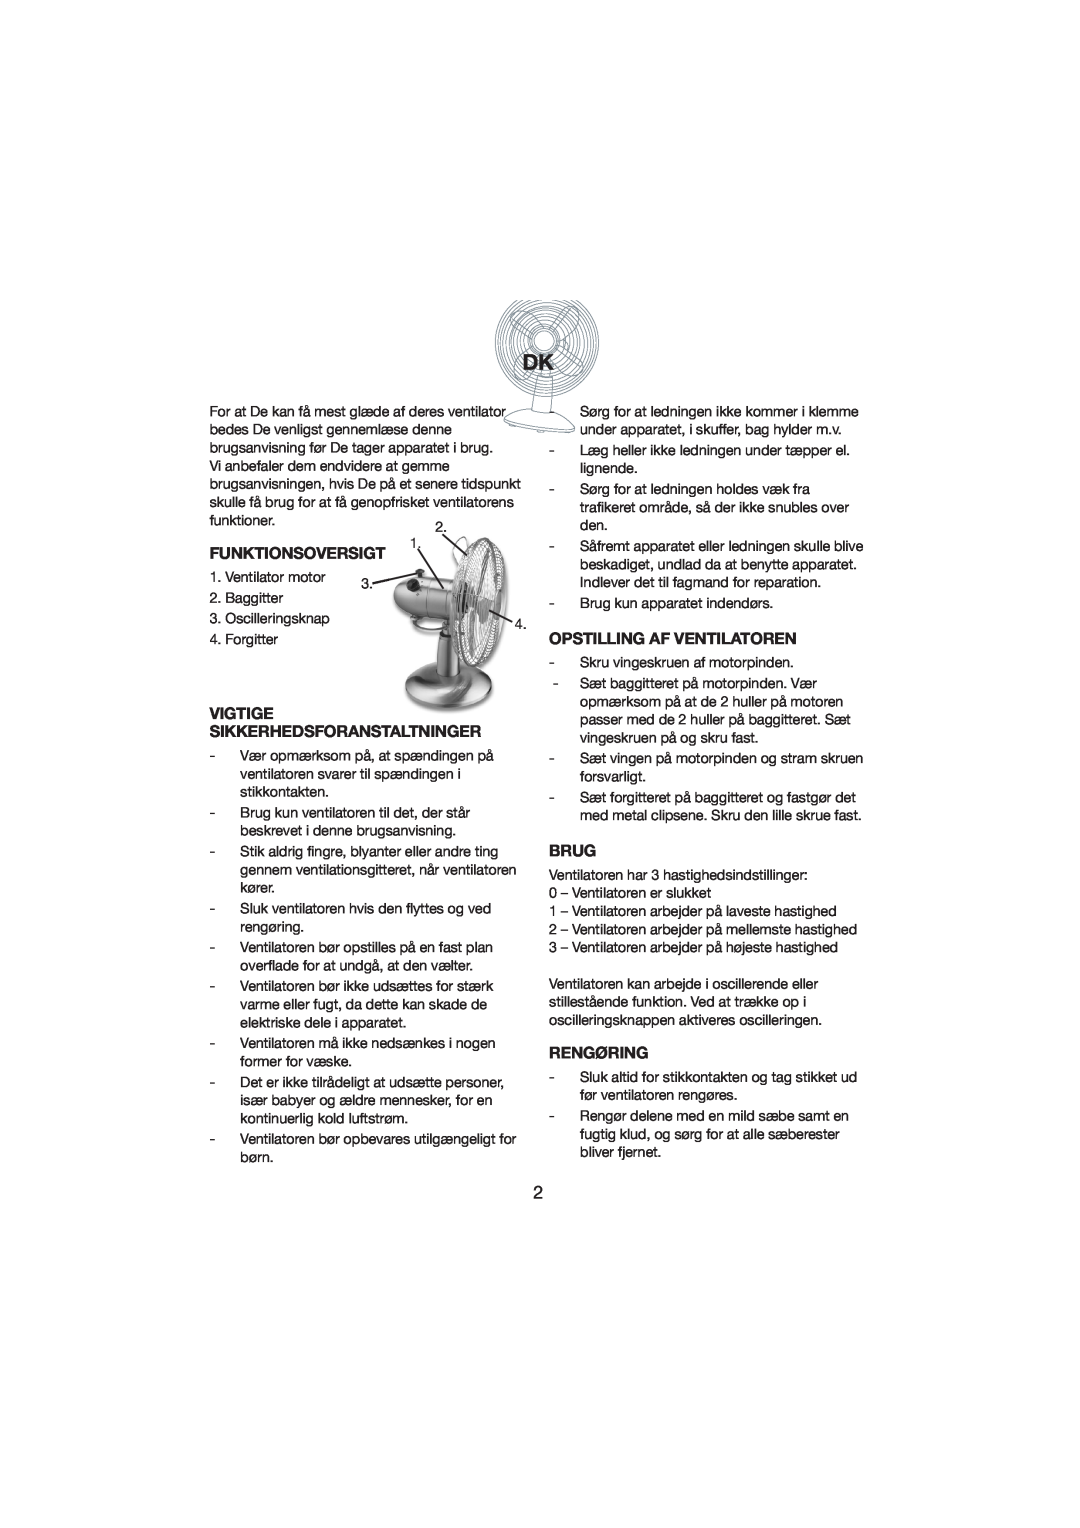 Melissa 271-001 manual Funktionsoversigt, Vigtige Sikkerhedsforanstaltninger, Opstilling Af Ventilatoren, Brug, Rengøring 